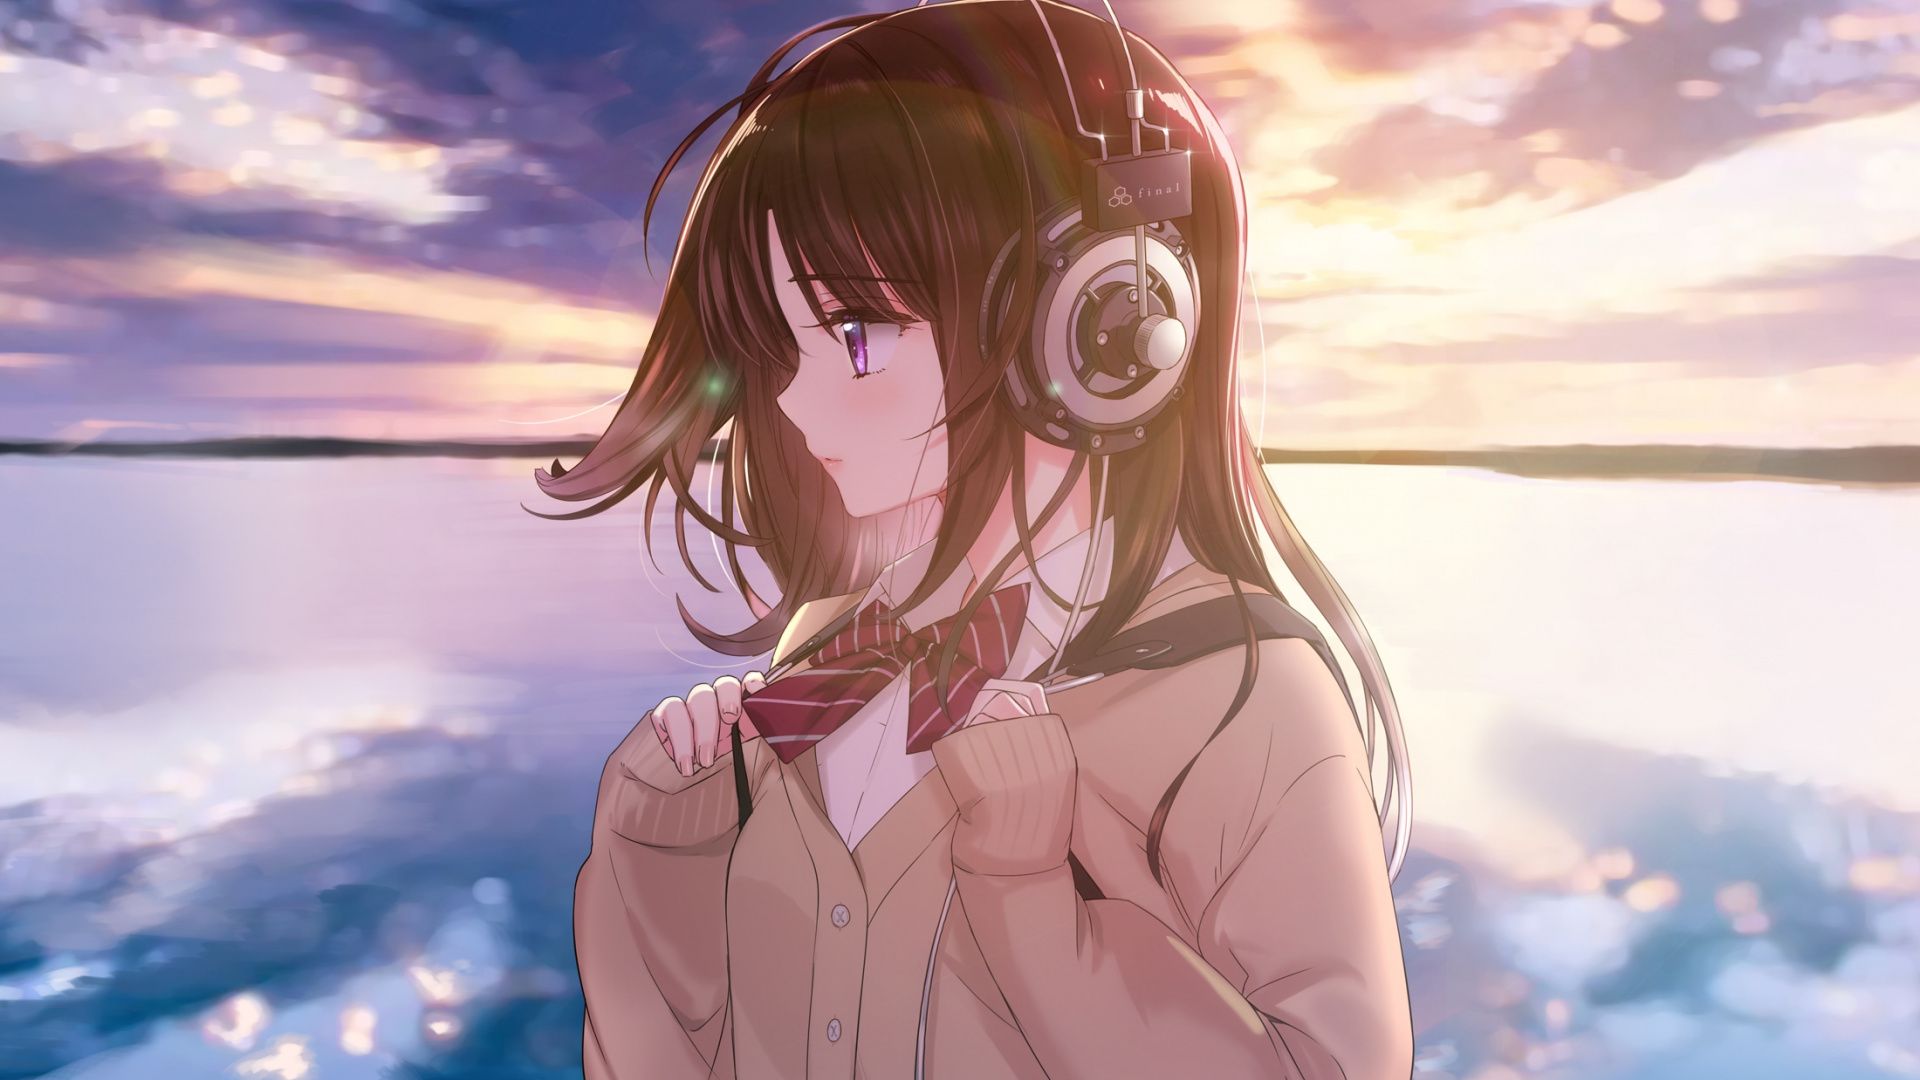 Download Anime girl, original, headphone, sunset, outdoor, art wallpaper, 1920x Full HD, HDTV, FHD, 1080p